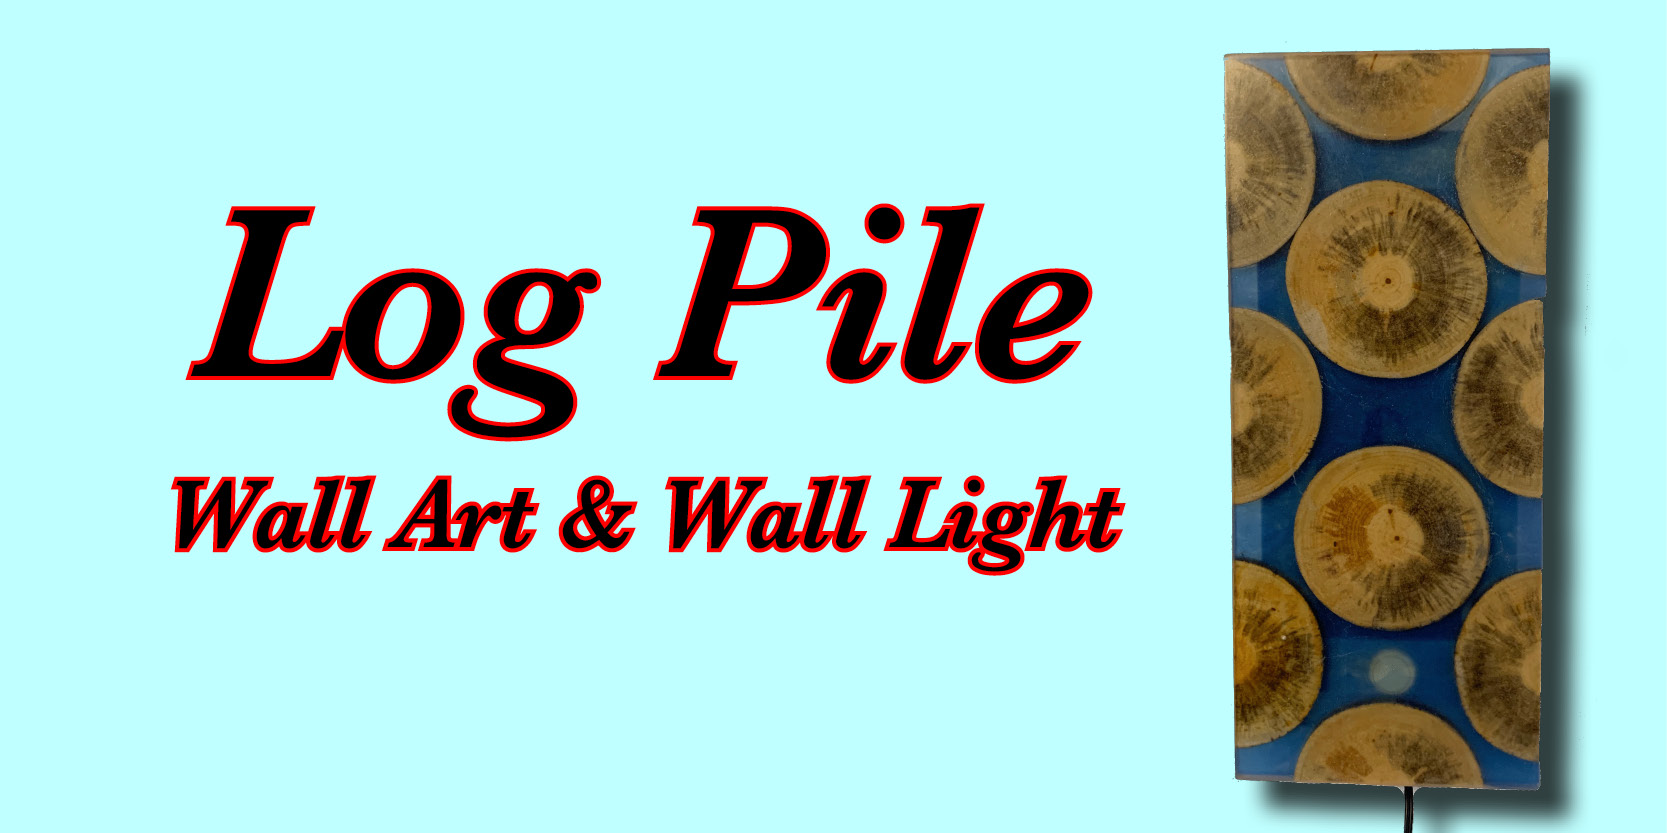 Log Pile Wall Light, Wall art, home decor, just a very cool beaver Dam wall light and art  